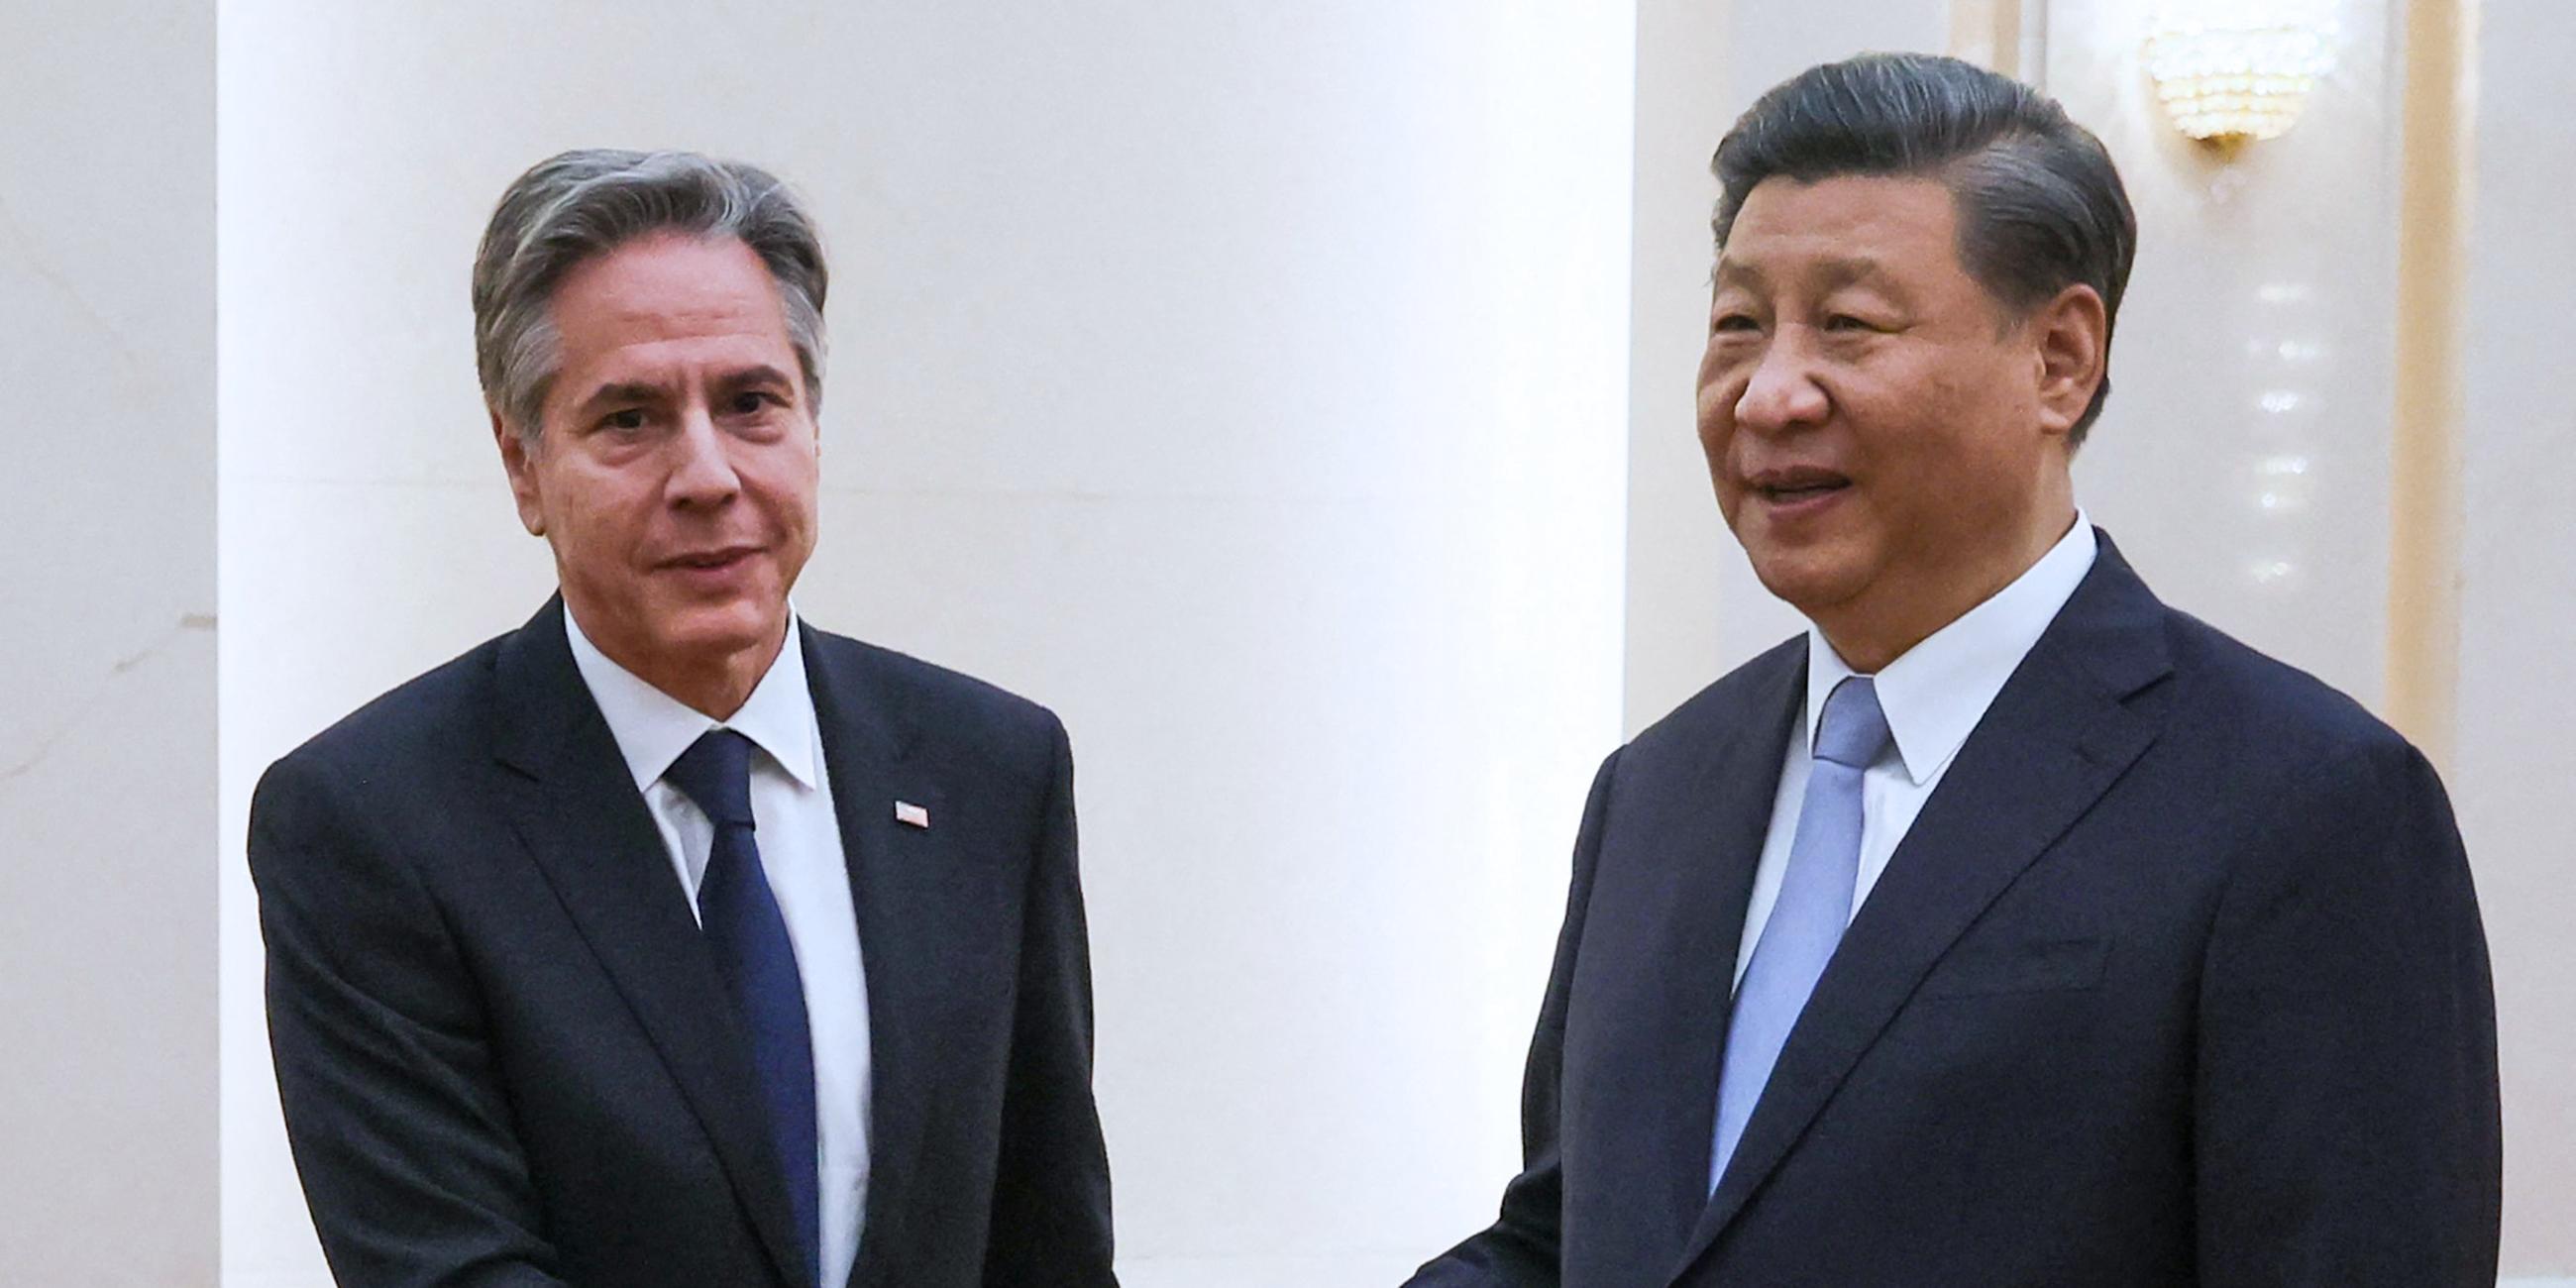 Außenminister Antony Blinken (l.) schüttelt dem chinesischen Präsidenten Xi Jinping die Hand